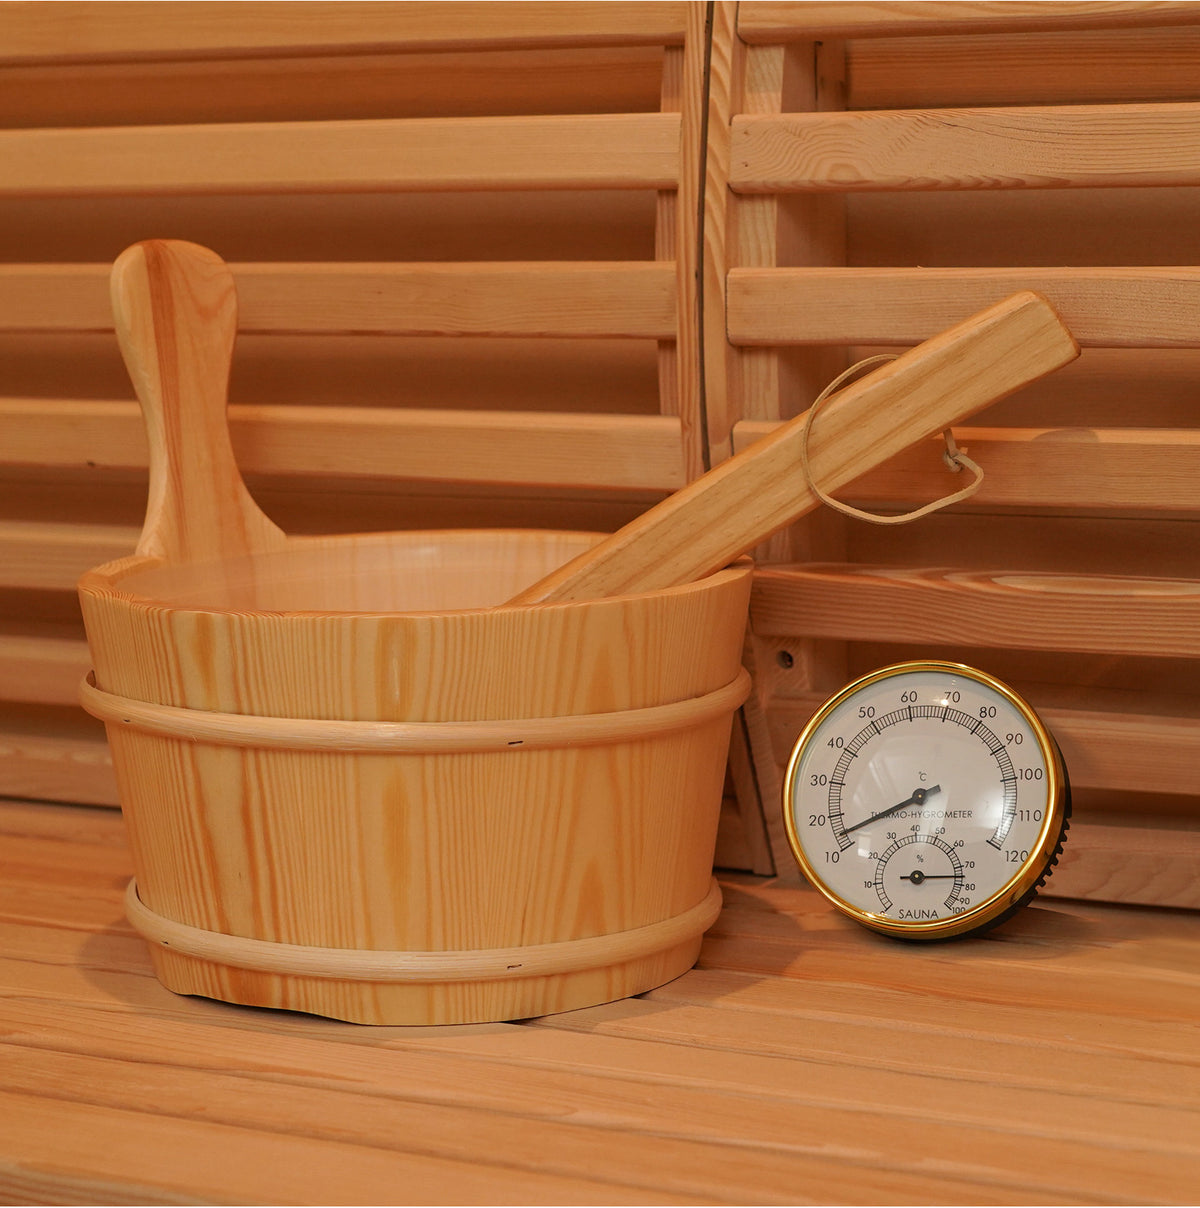 SAUNASNET® Garden Waterproof Traditional Sauna Steam Room Cabin 01